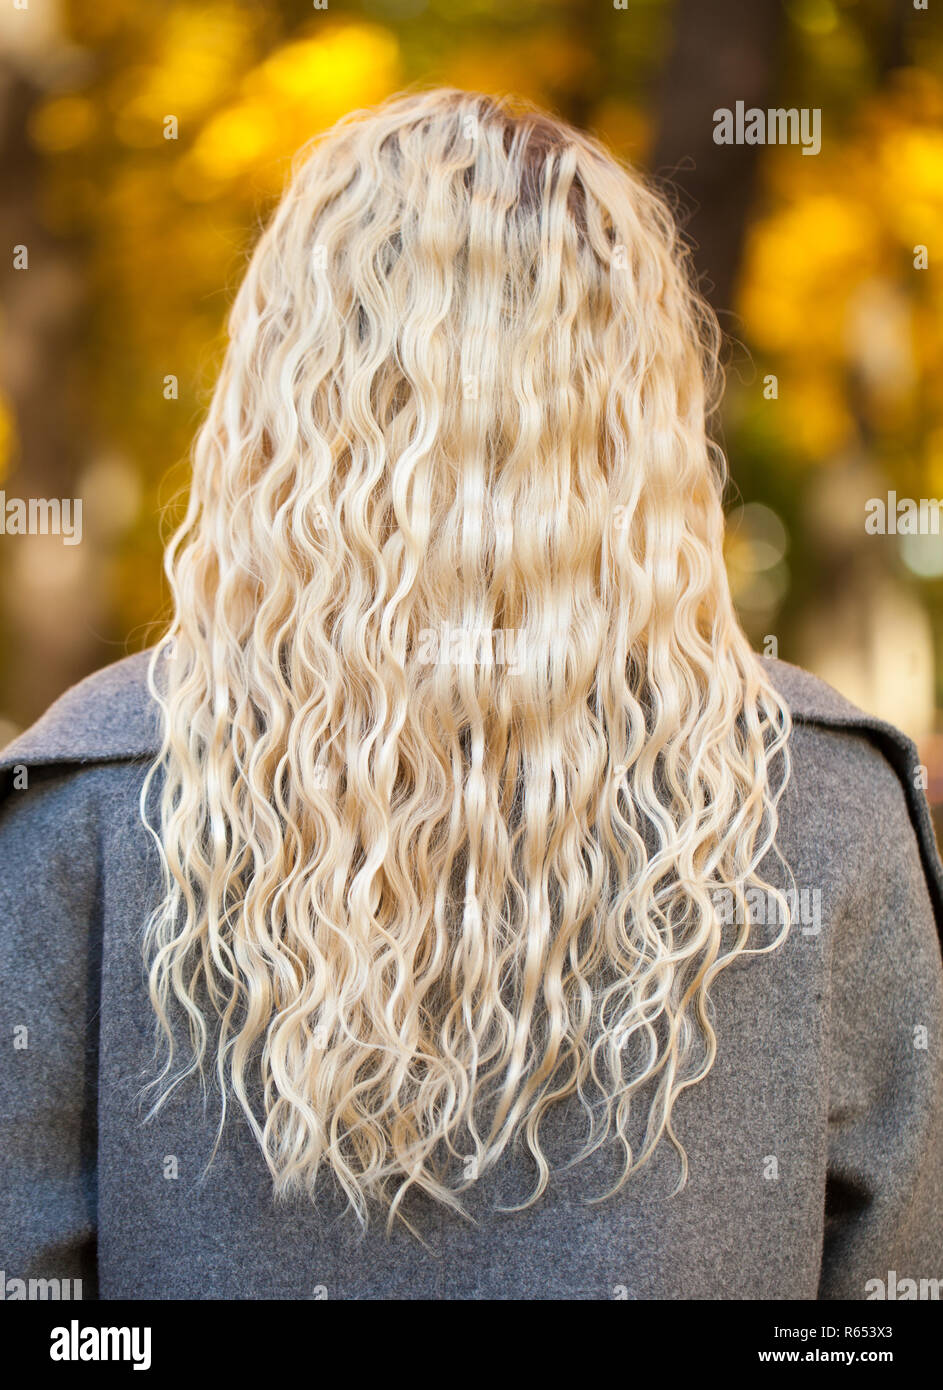 Frau Lange gewellte blonde Haare, Rückansicht, Herbst Straße im Freien  Stockfotografie - Alamy